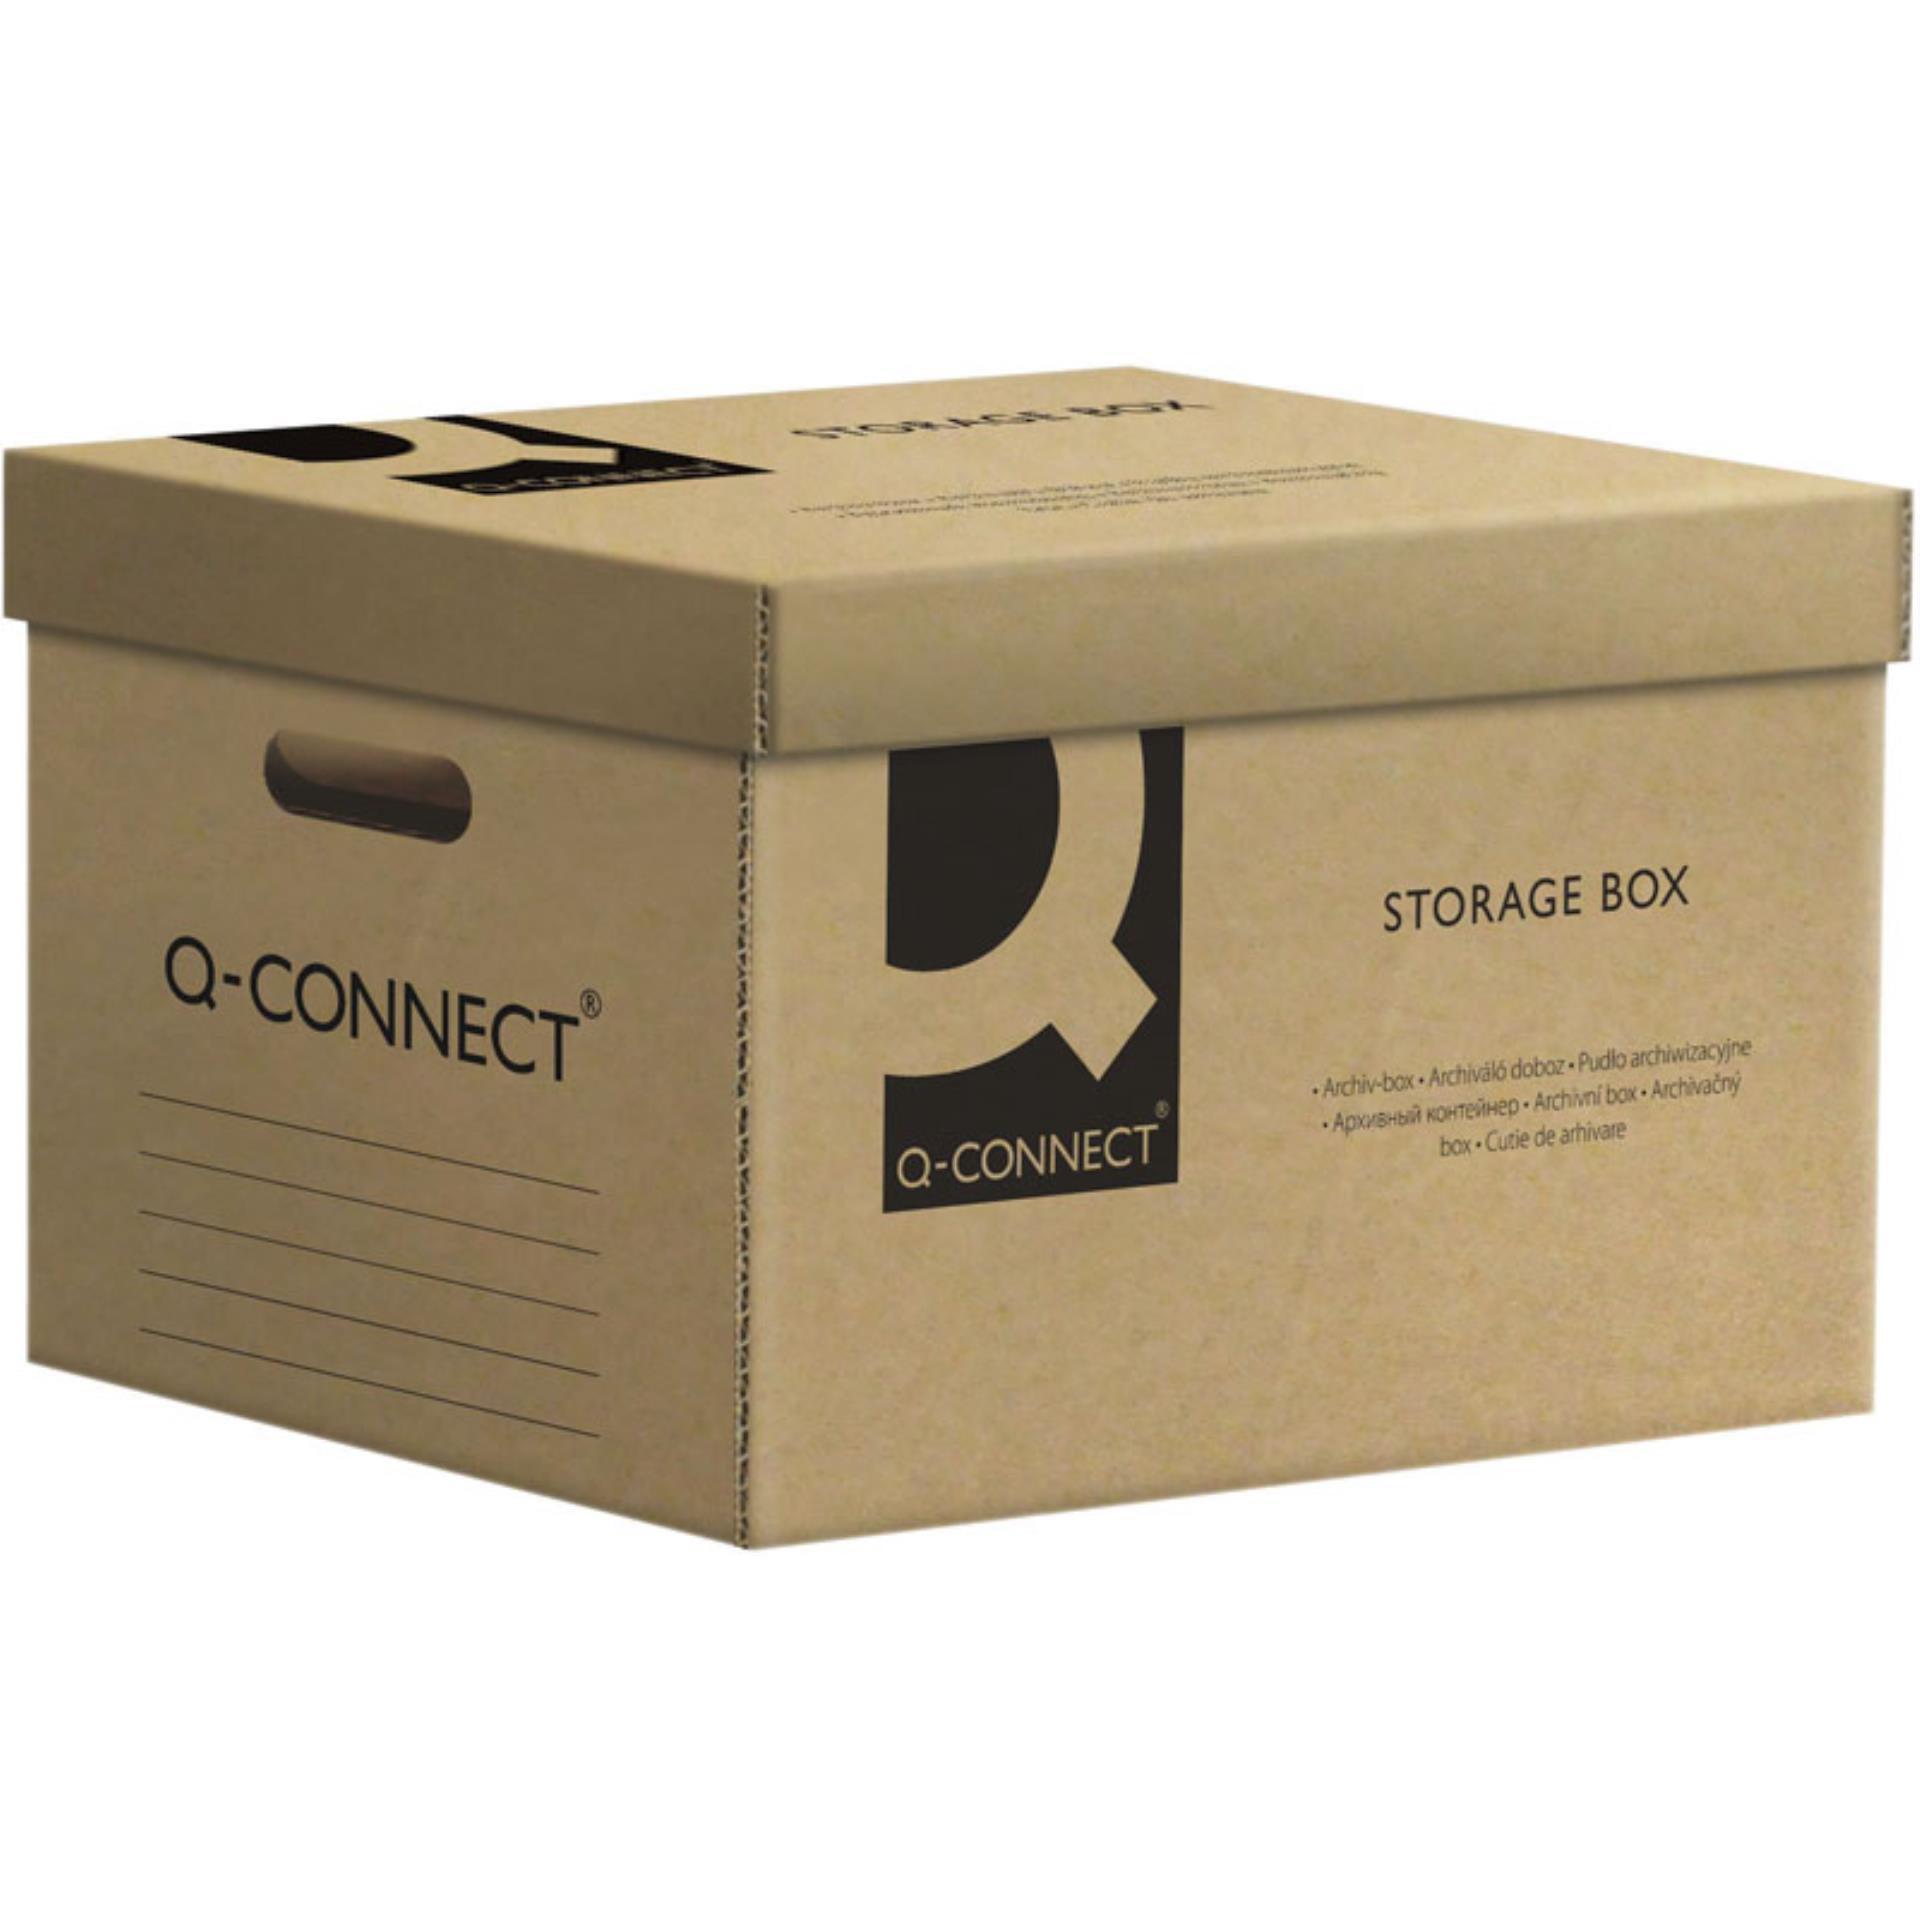 Archivační box Q-Connect - 51,5 x 30,5 x 35,0 cm, šedý